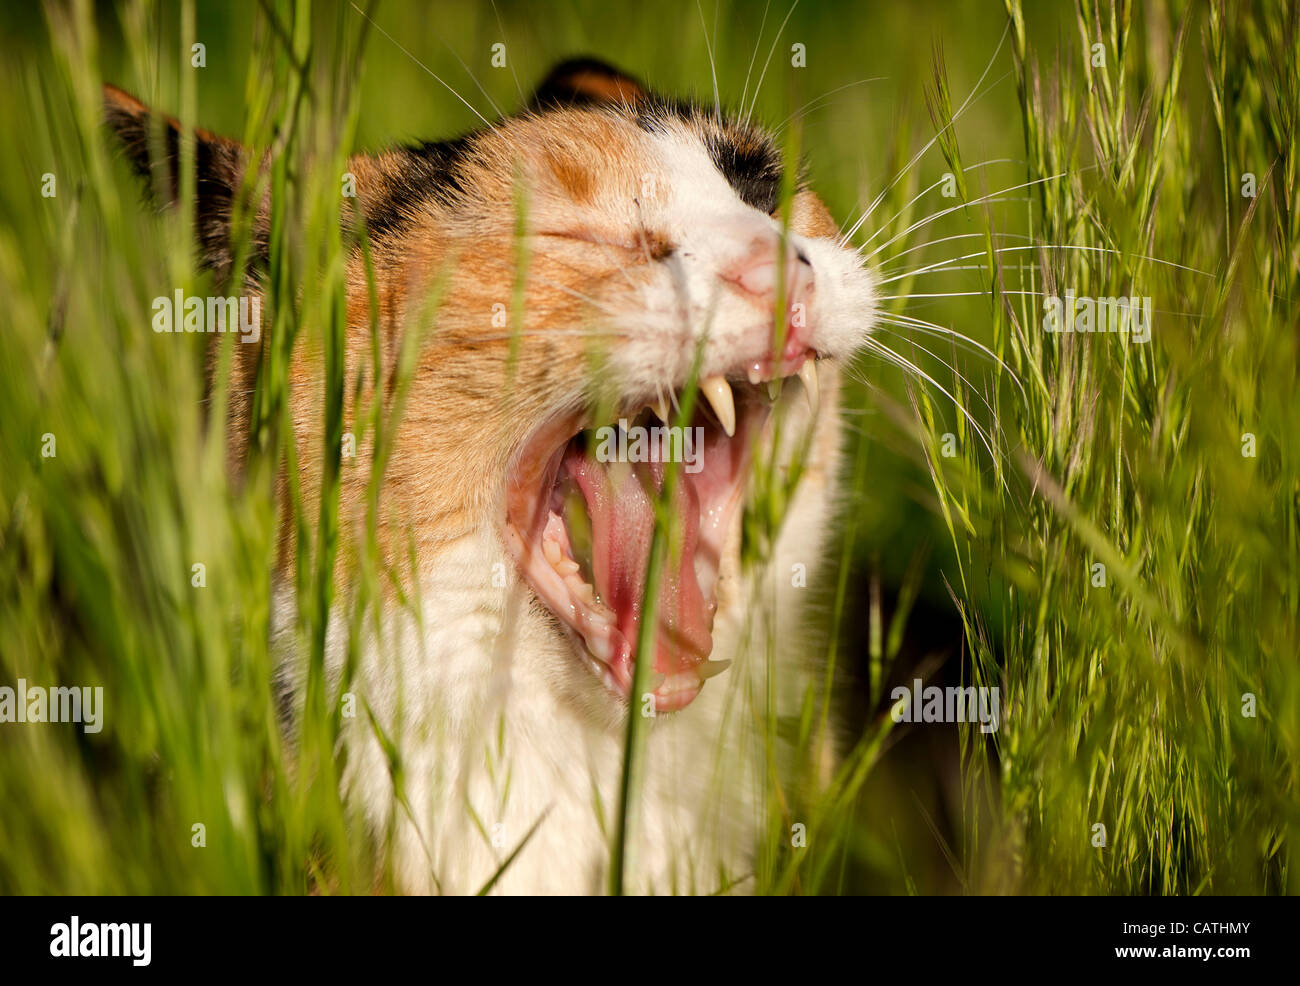 20 avril 2012 - Oakland, Oregon, États-Unis - un chat calico bâille en se cachant dans les hautes herbes dans un champ près d'une maison à Oakland, en Orégon (crédit Image : © Loznak ZUMAPRESS.com)/Robin Banque D'Images